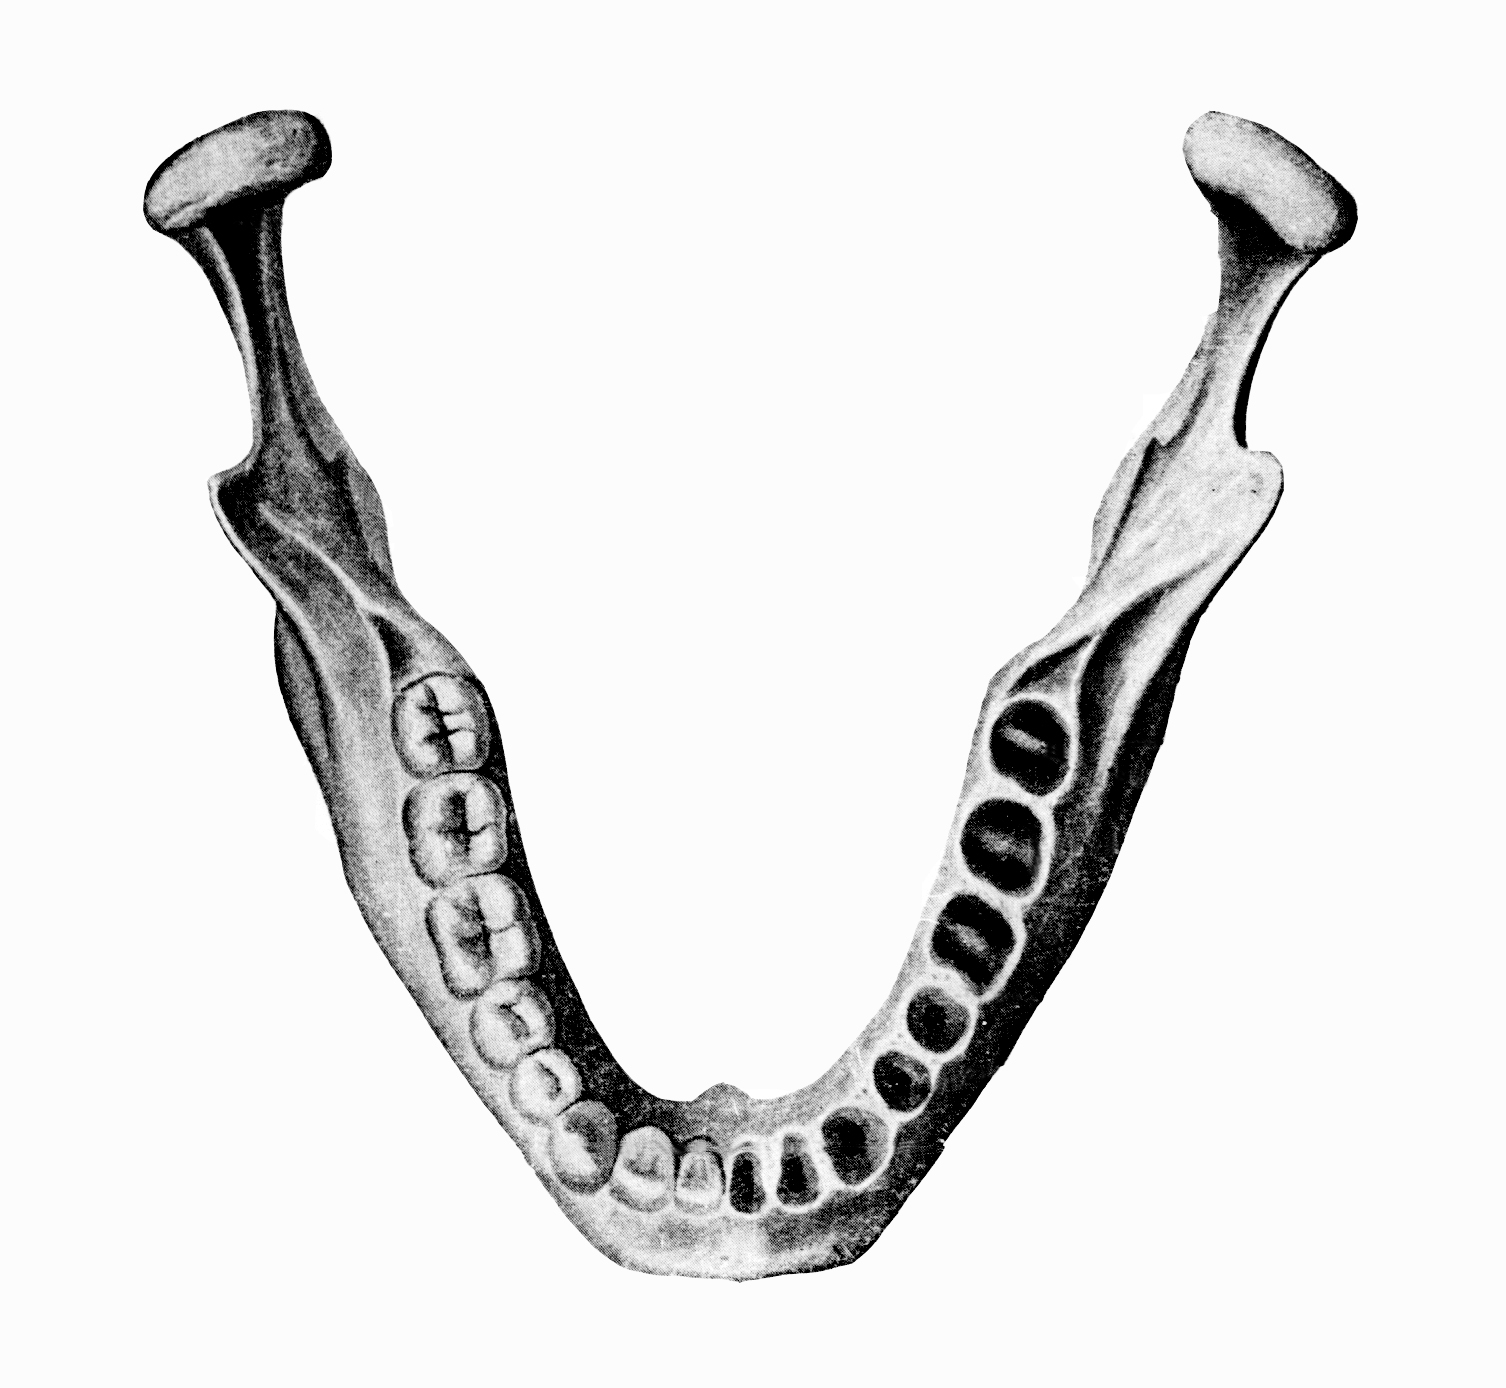 Ковид зубова. Нижняя челюсть кость анатомия. Зубные альвеолы нижней челюсти. Нижняя челюсть кость анатомия человека. Мед универ нижняя челюсть.